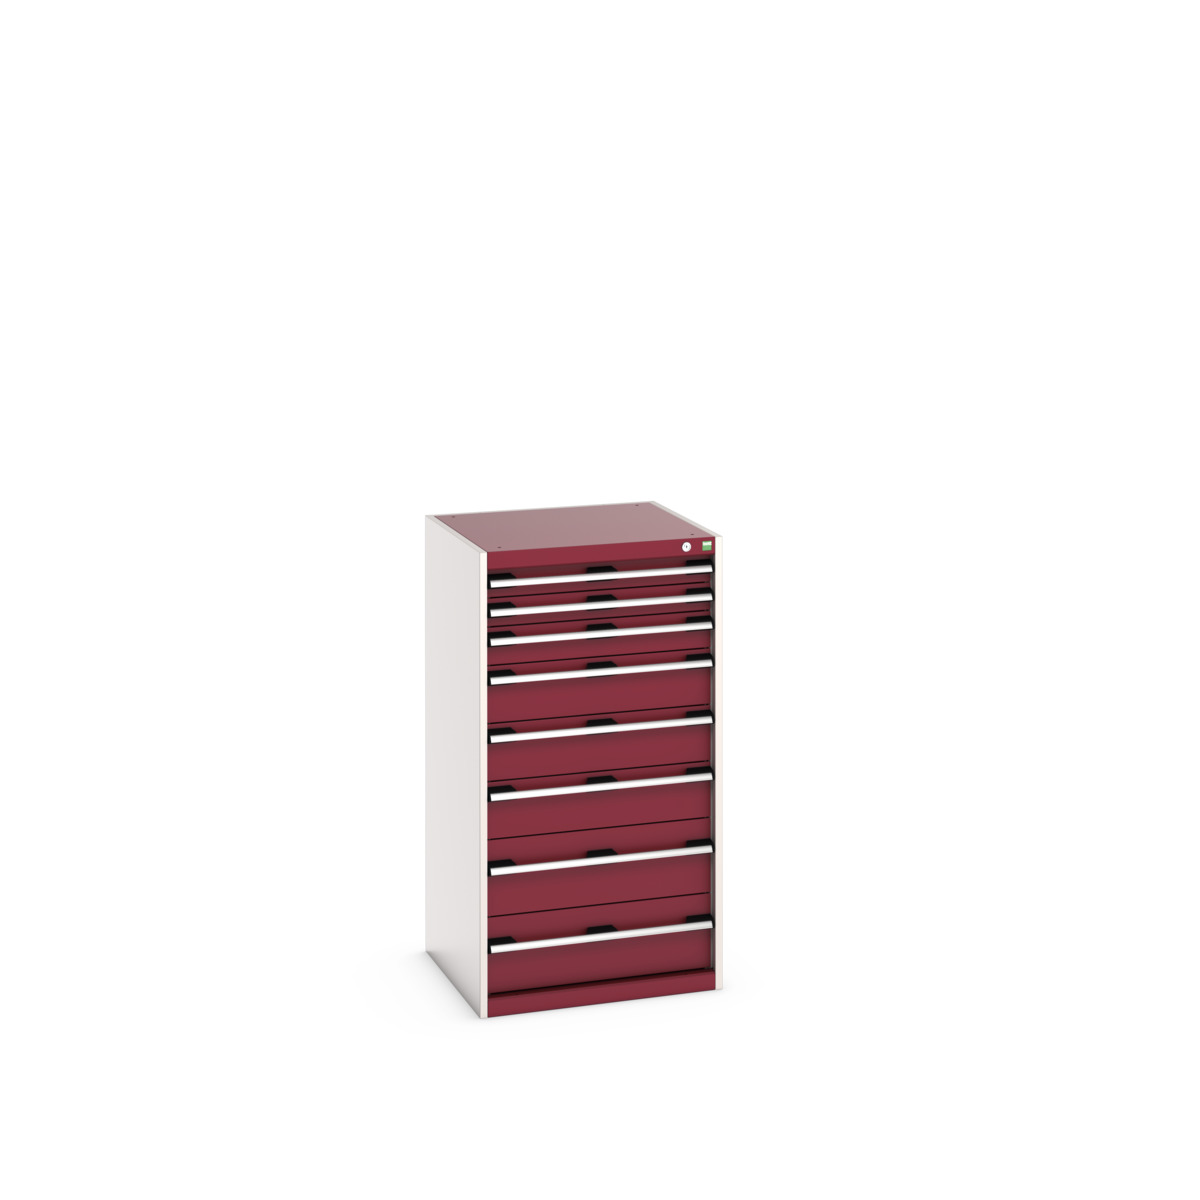 40019071.24V - cubio drawer cabinet